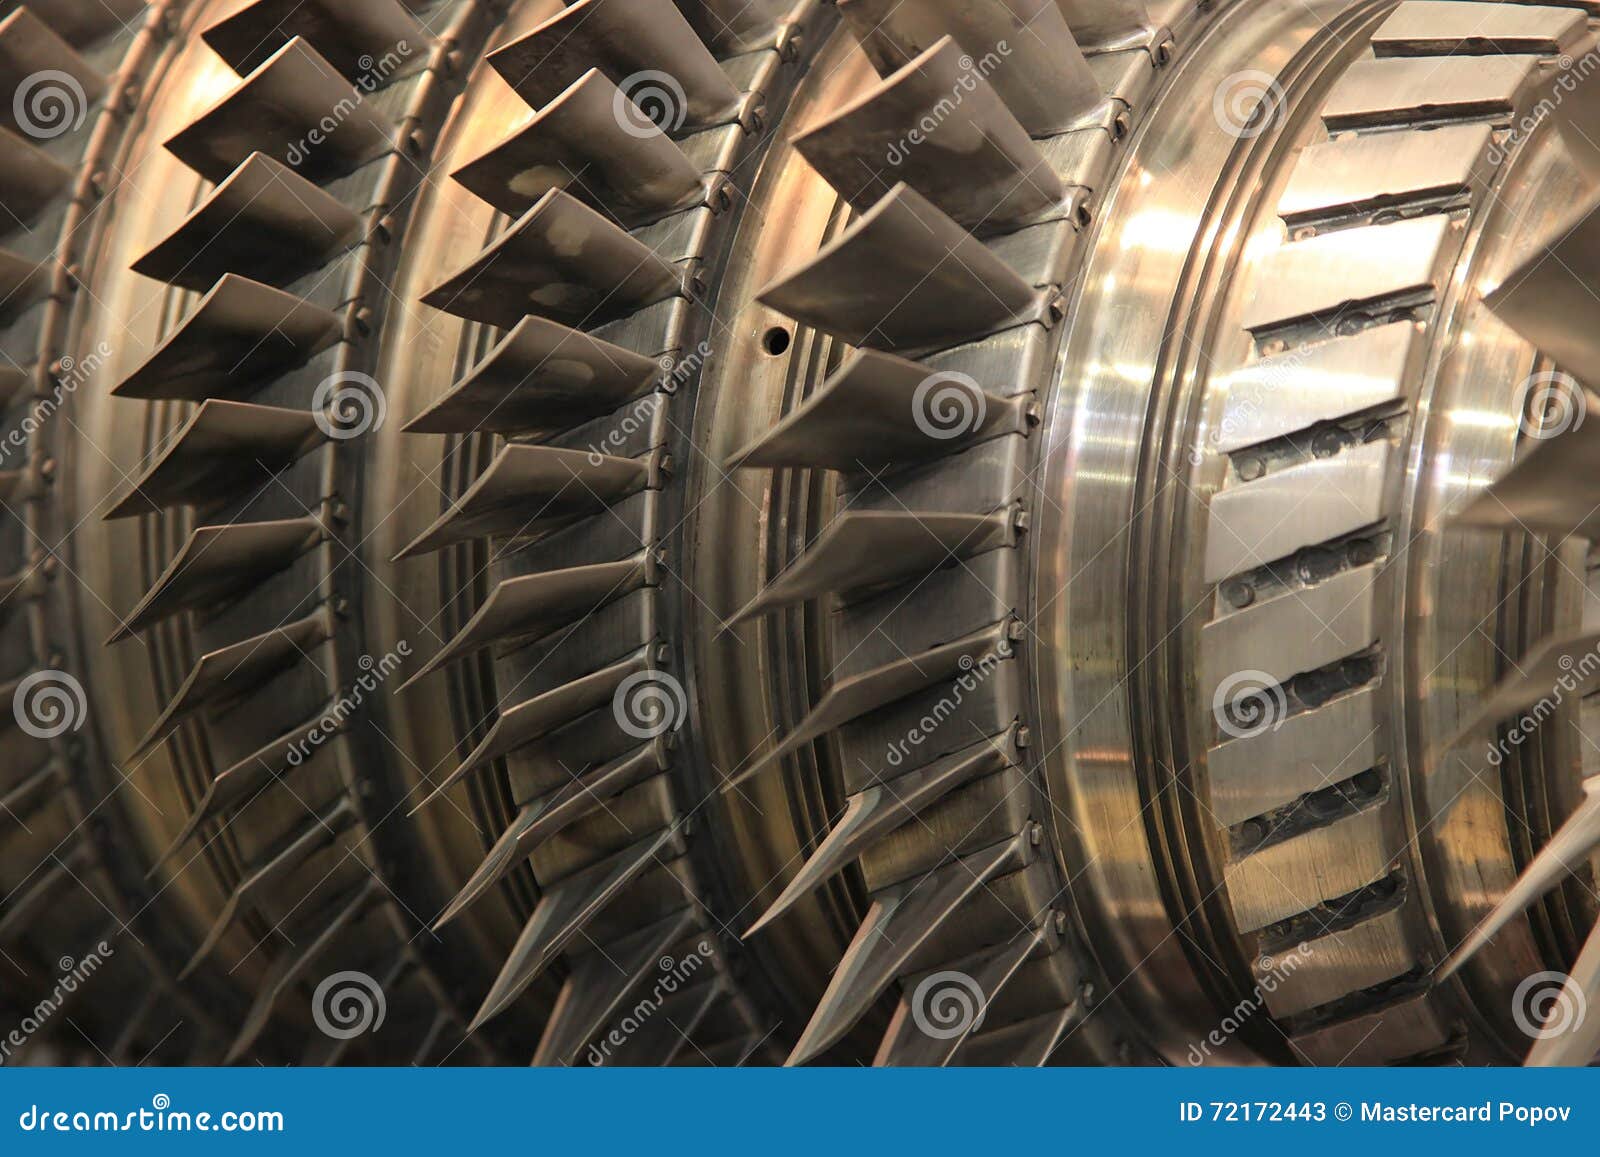 Паровая турбина лопатки. Лопатка паровой турбины. Лопасти паровой турбины. Диафрагма паровой турбины. Диафрагмы паровых турбин.